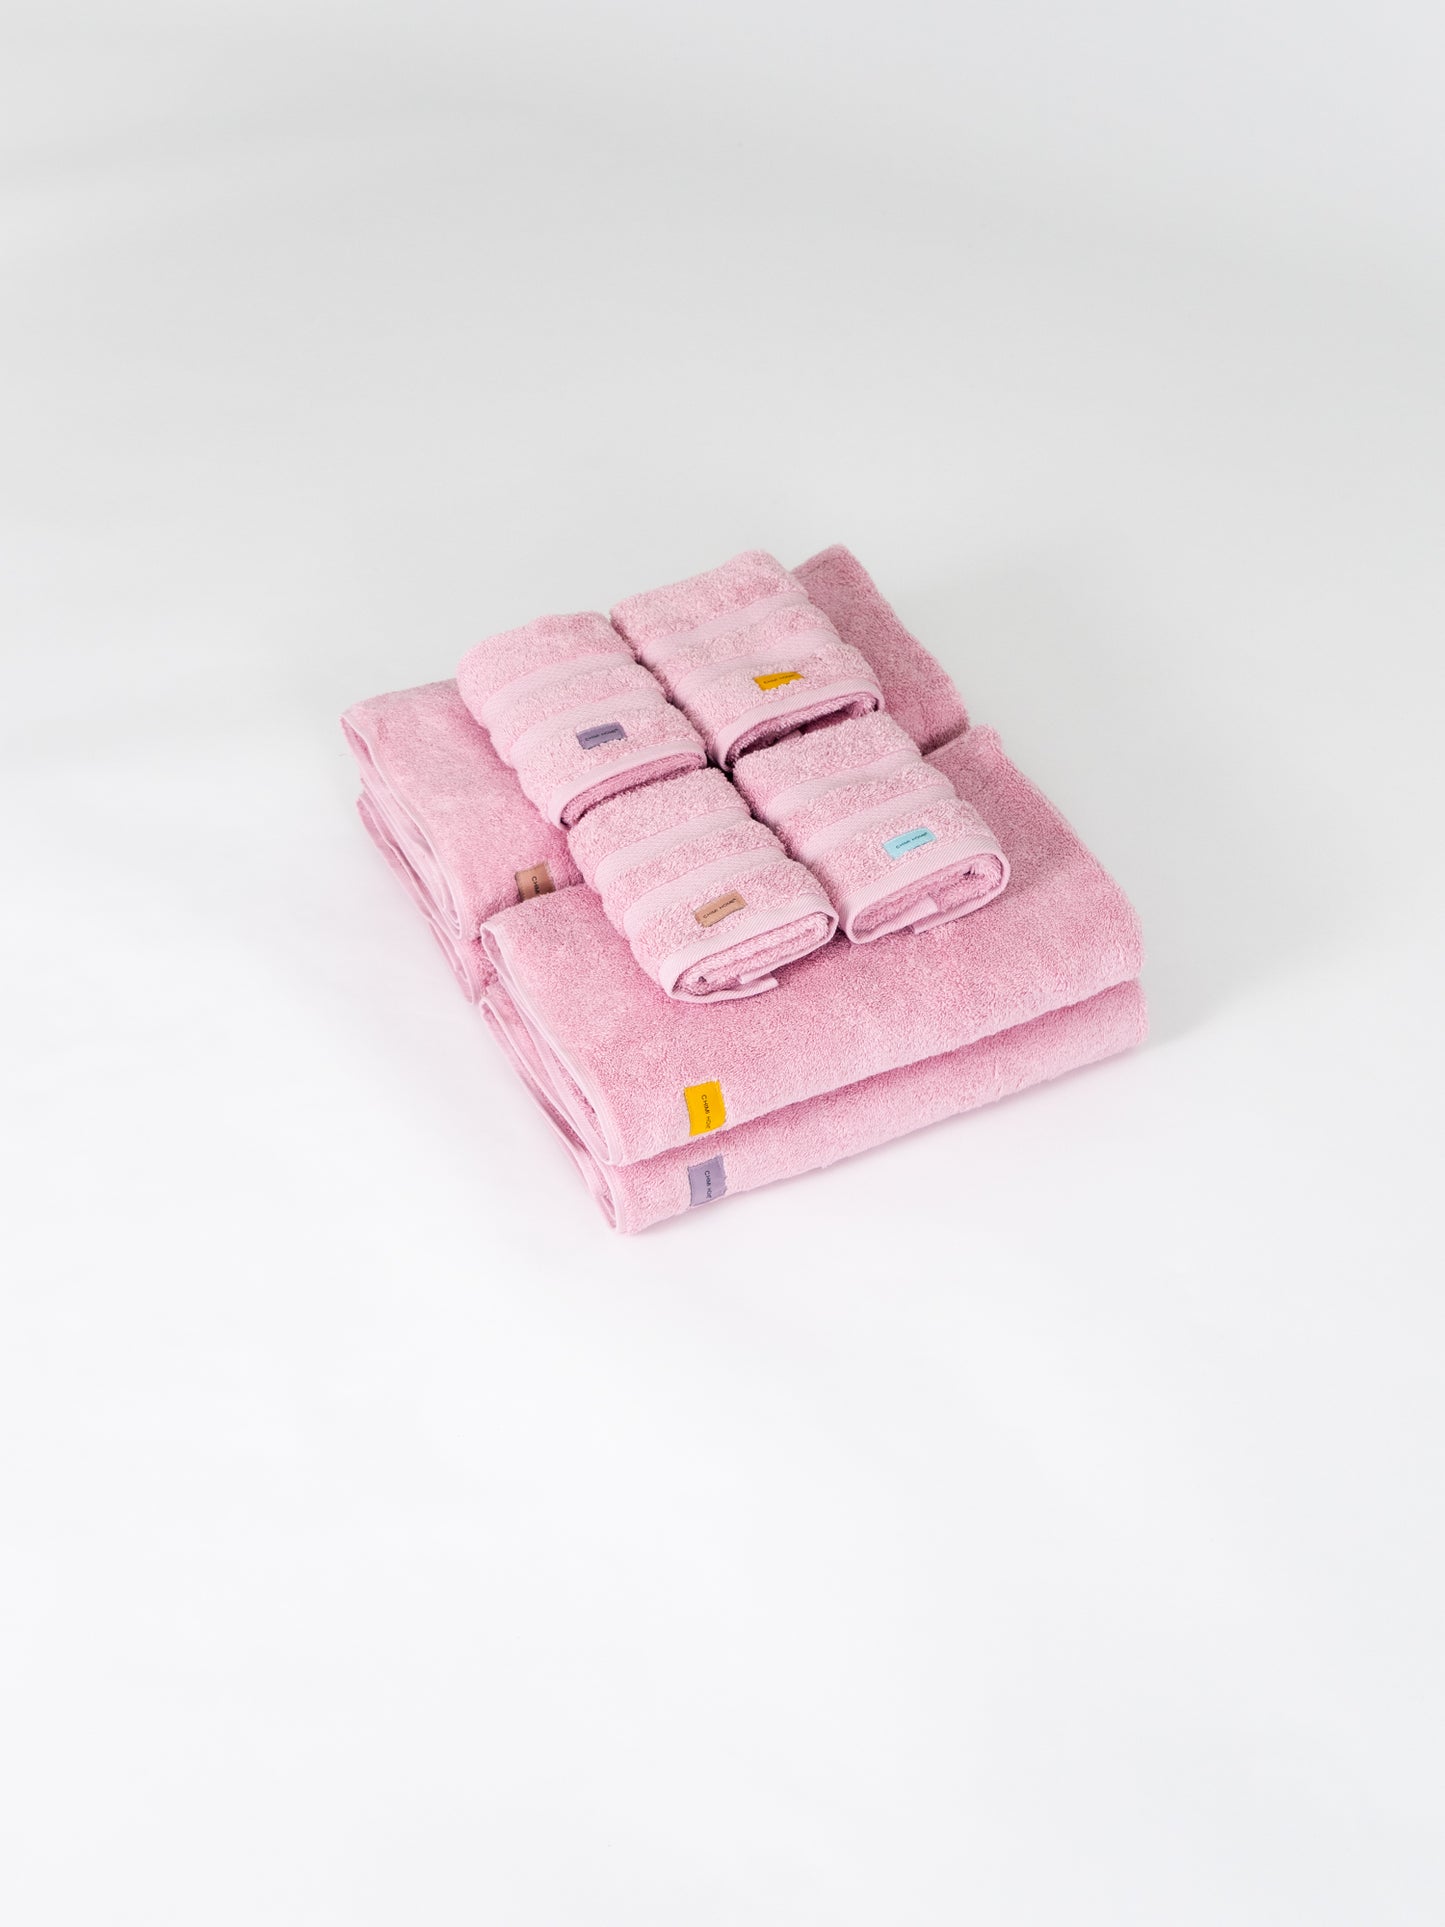 Rosa Handduk - Soft Pink